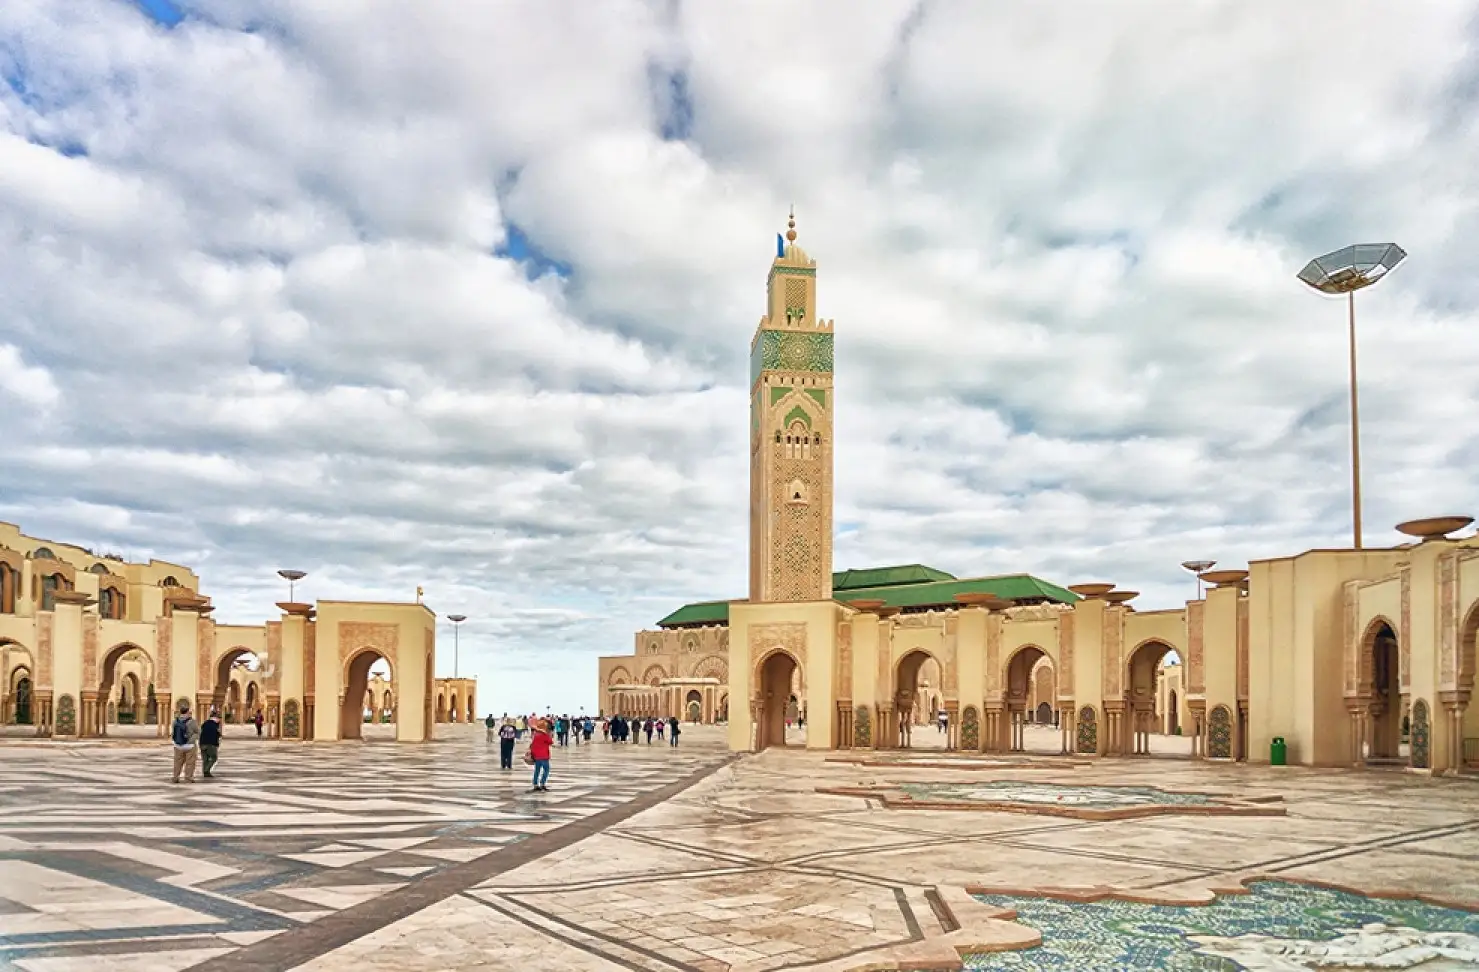 Day 7: Casablanca – Marrakech 